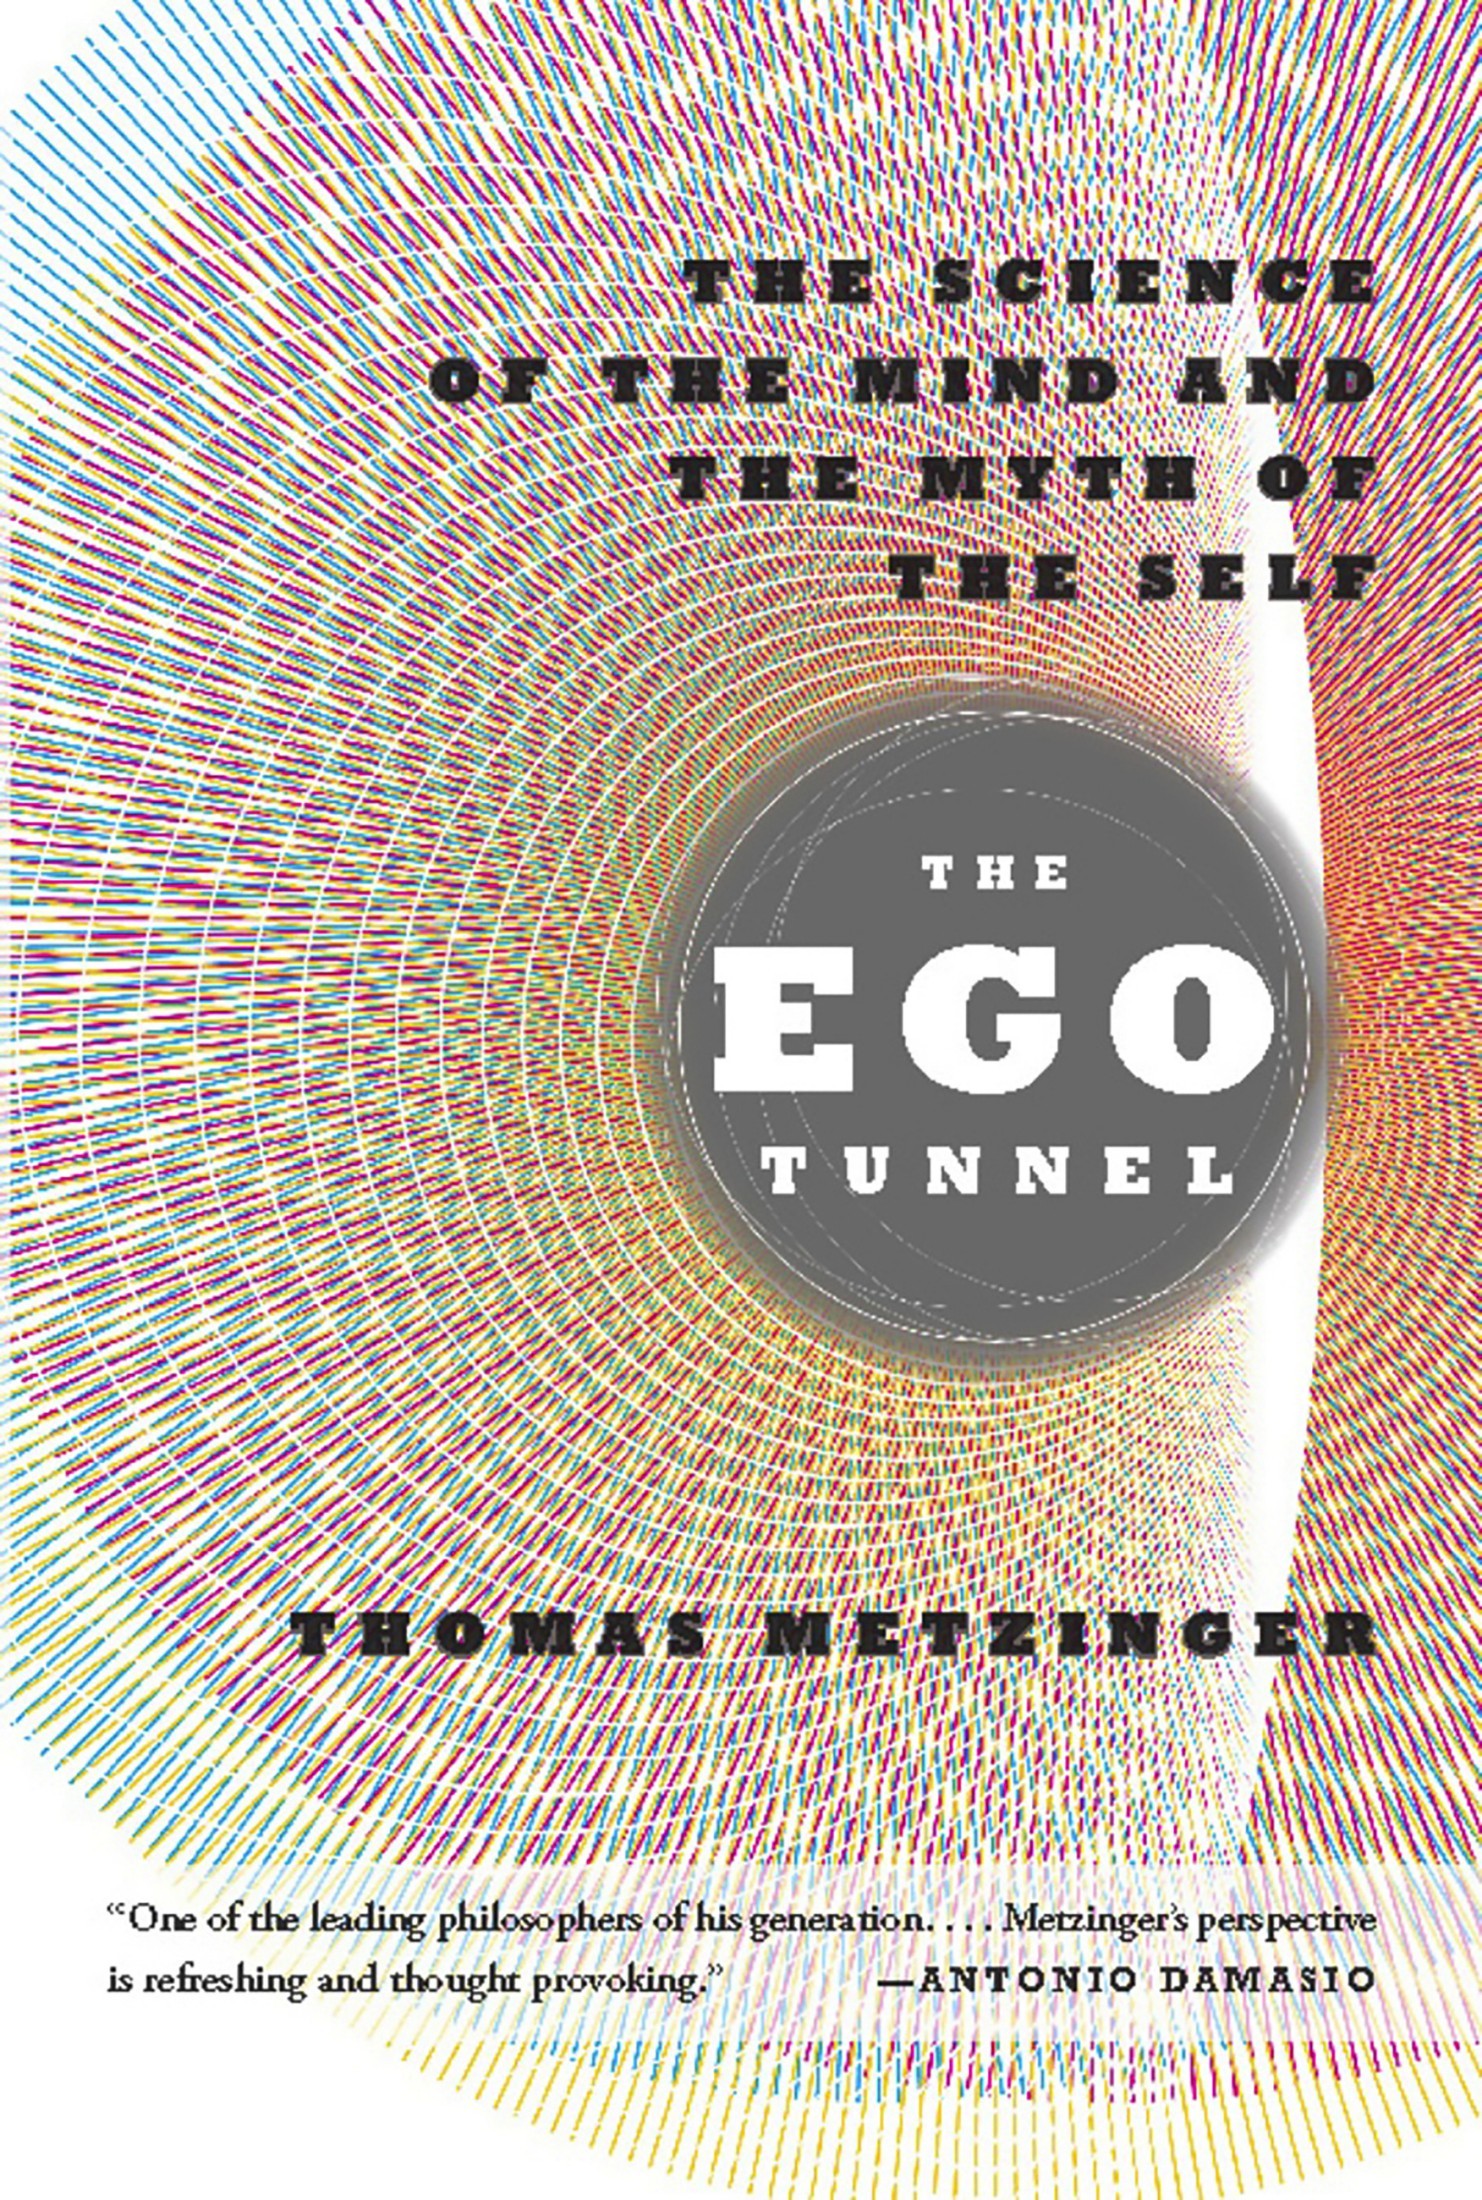 Der Ego-Tunnel: Eine neue Philosophie des Selbst: Von der Hirnforschung zur Bewusstseinsethik